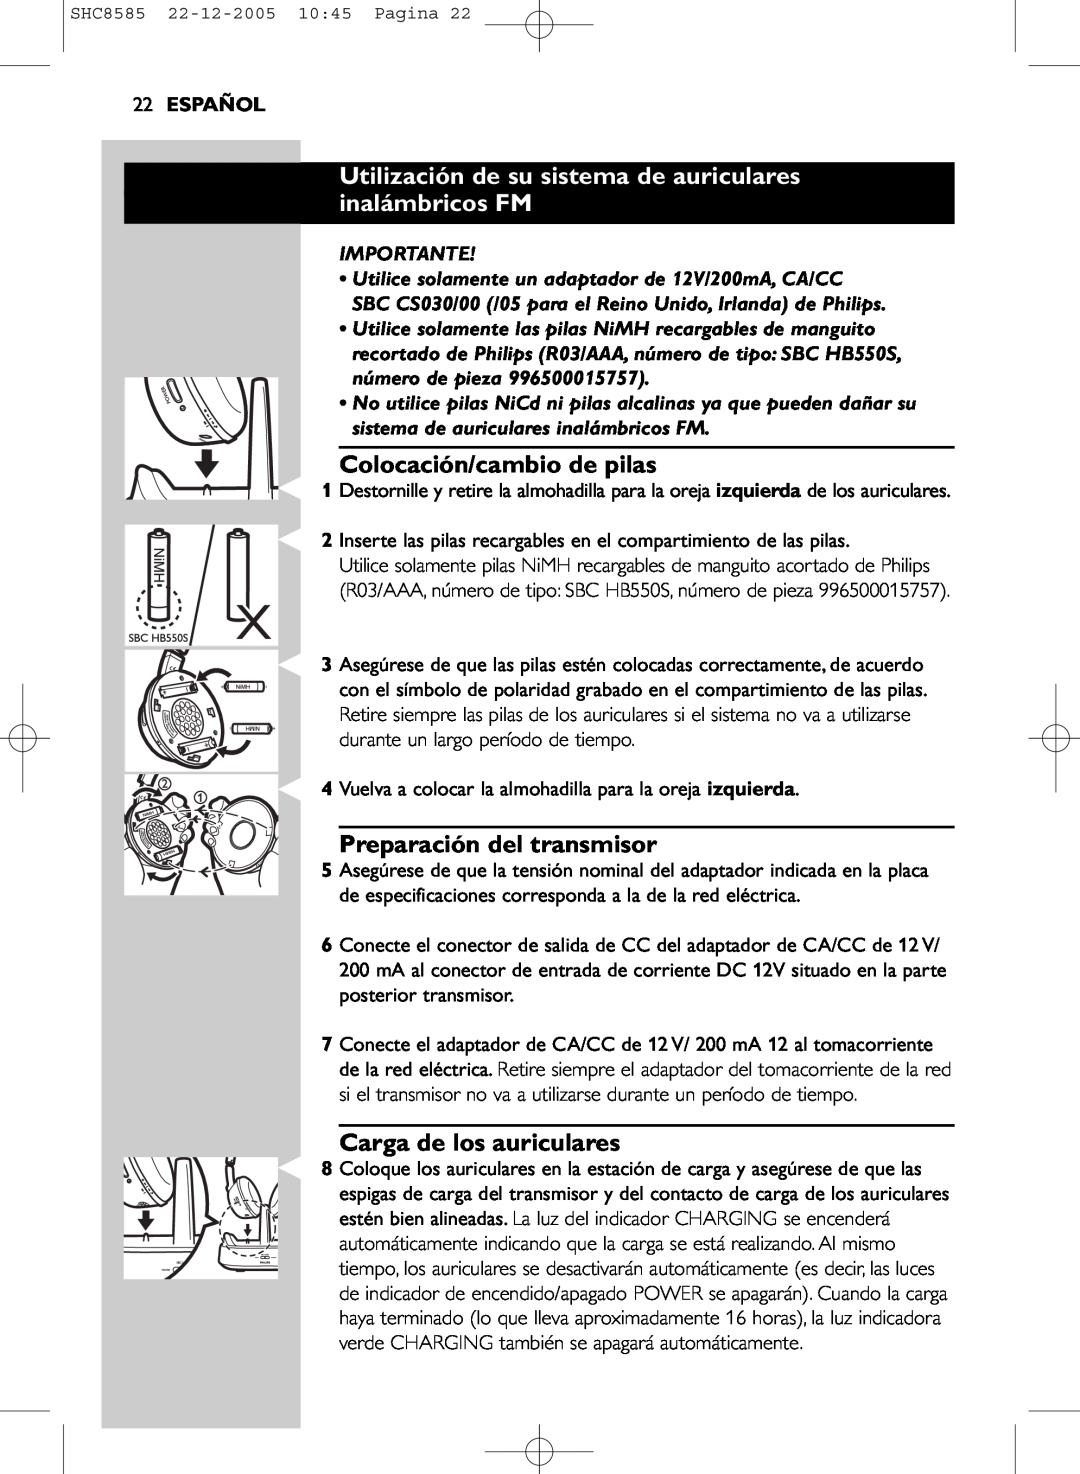 Philips SHC8585/05 manual Colocación/cambio de pilas, Preparación del transmisor, Carga de los auriculares, 22ESPAÑOL 